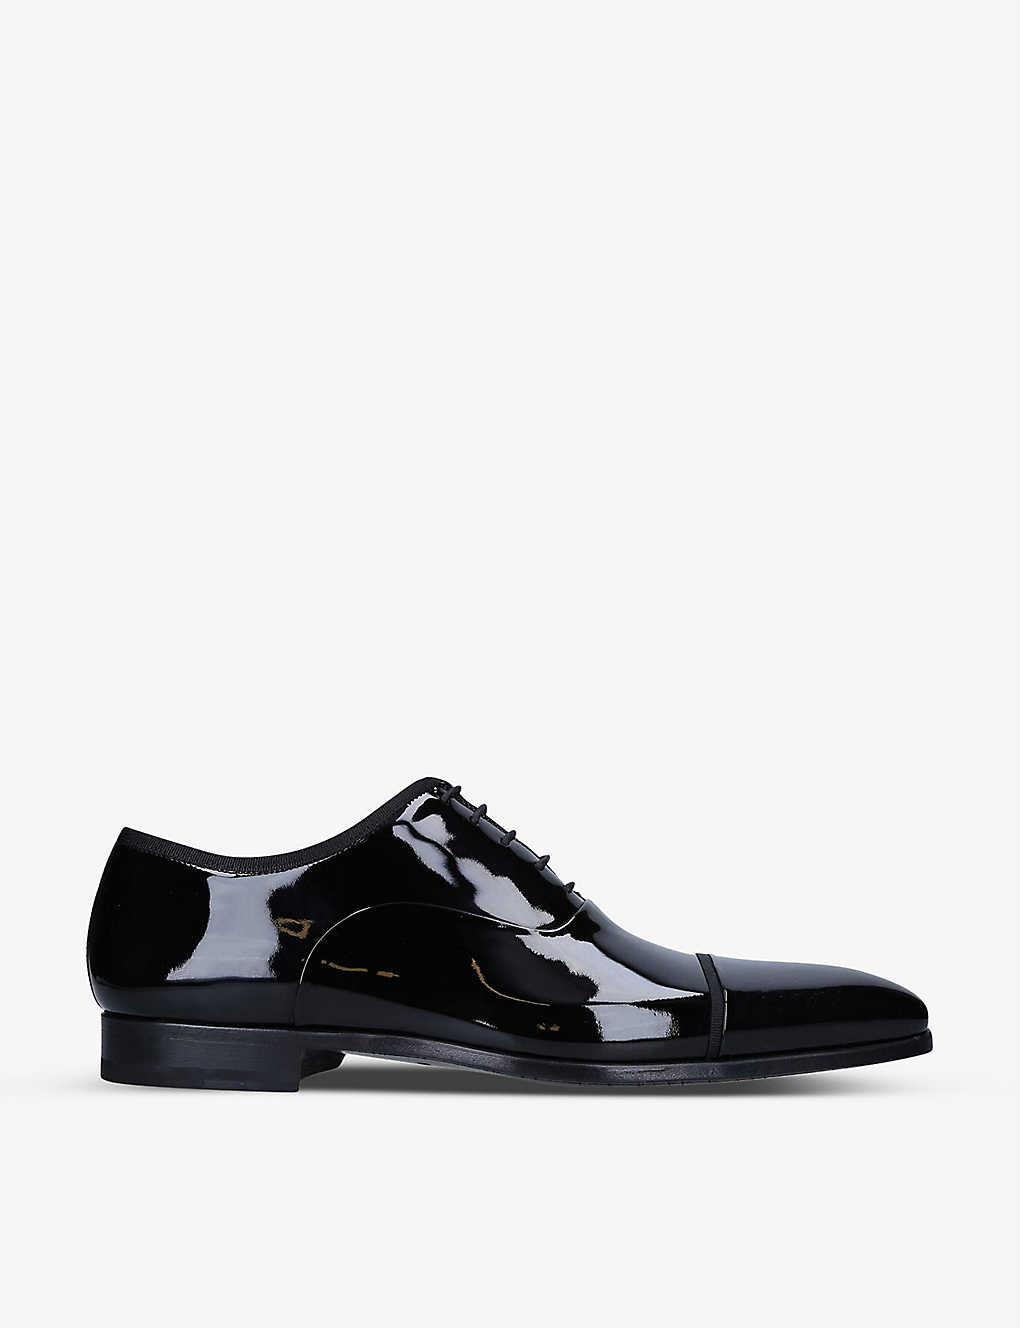 Shop Magnanni Men's Black Jadiel Patent-leather Oxford Shoes